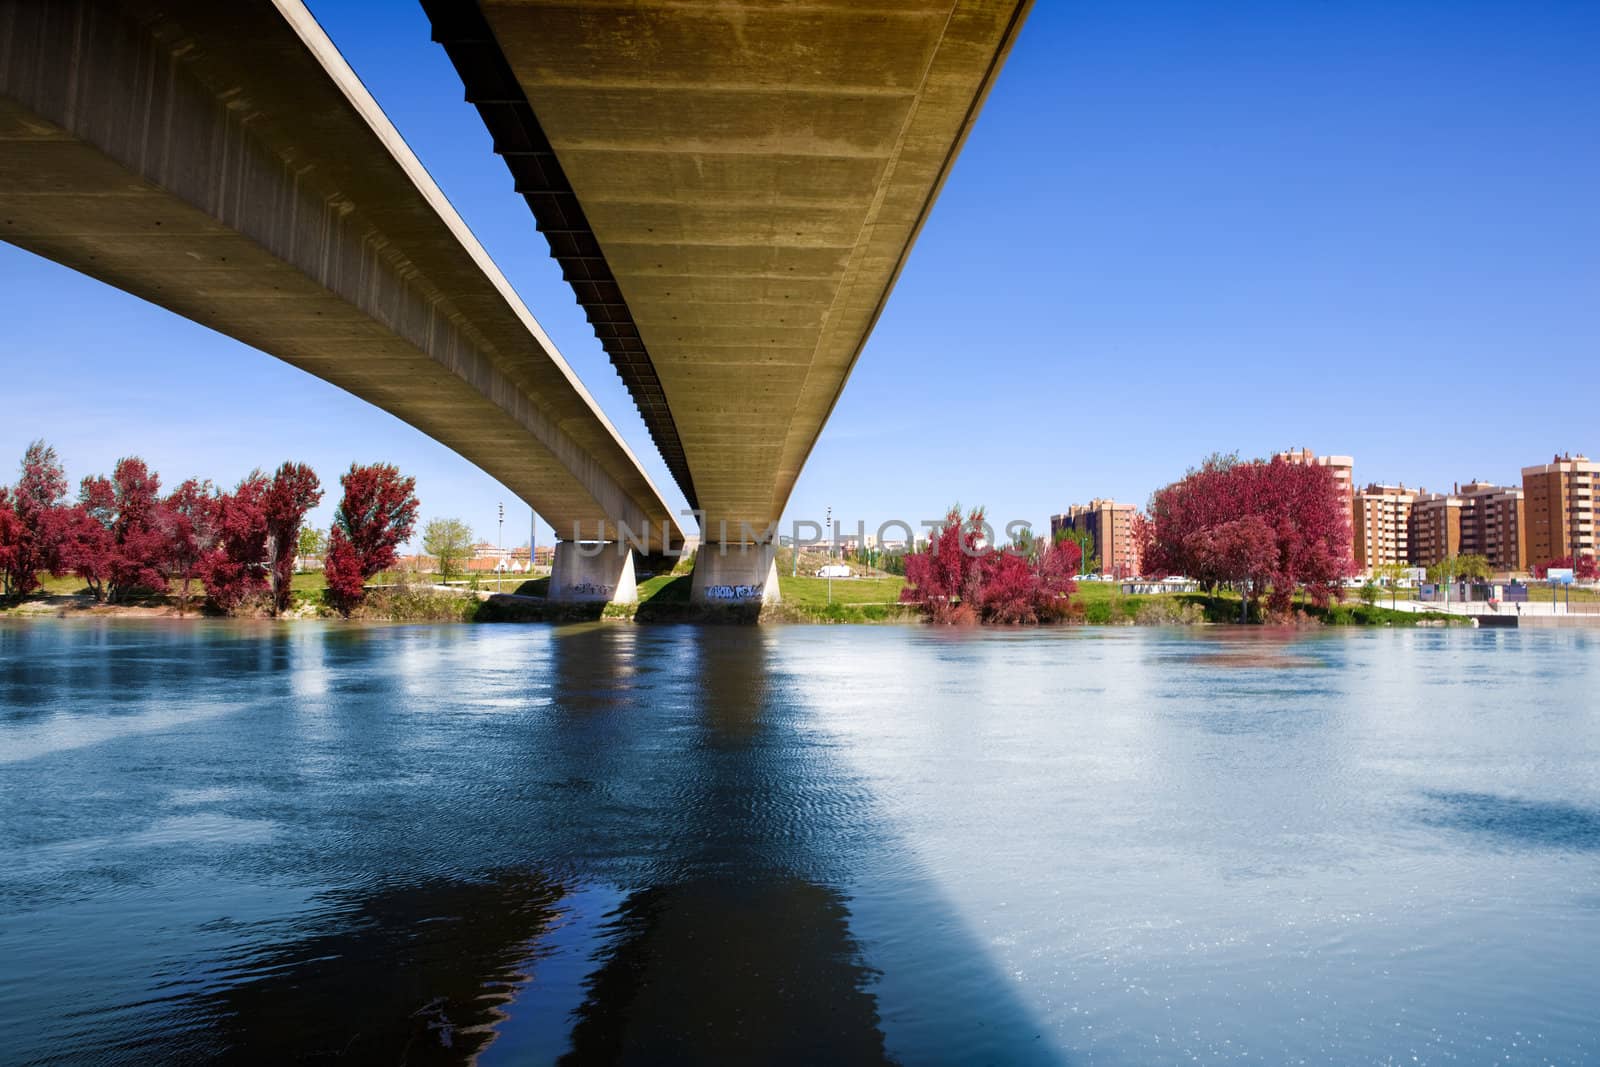 Architectural image of concrete bridge and river